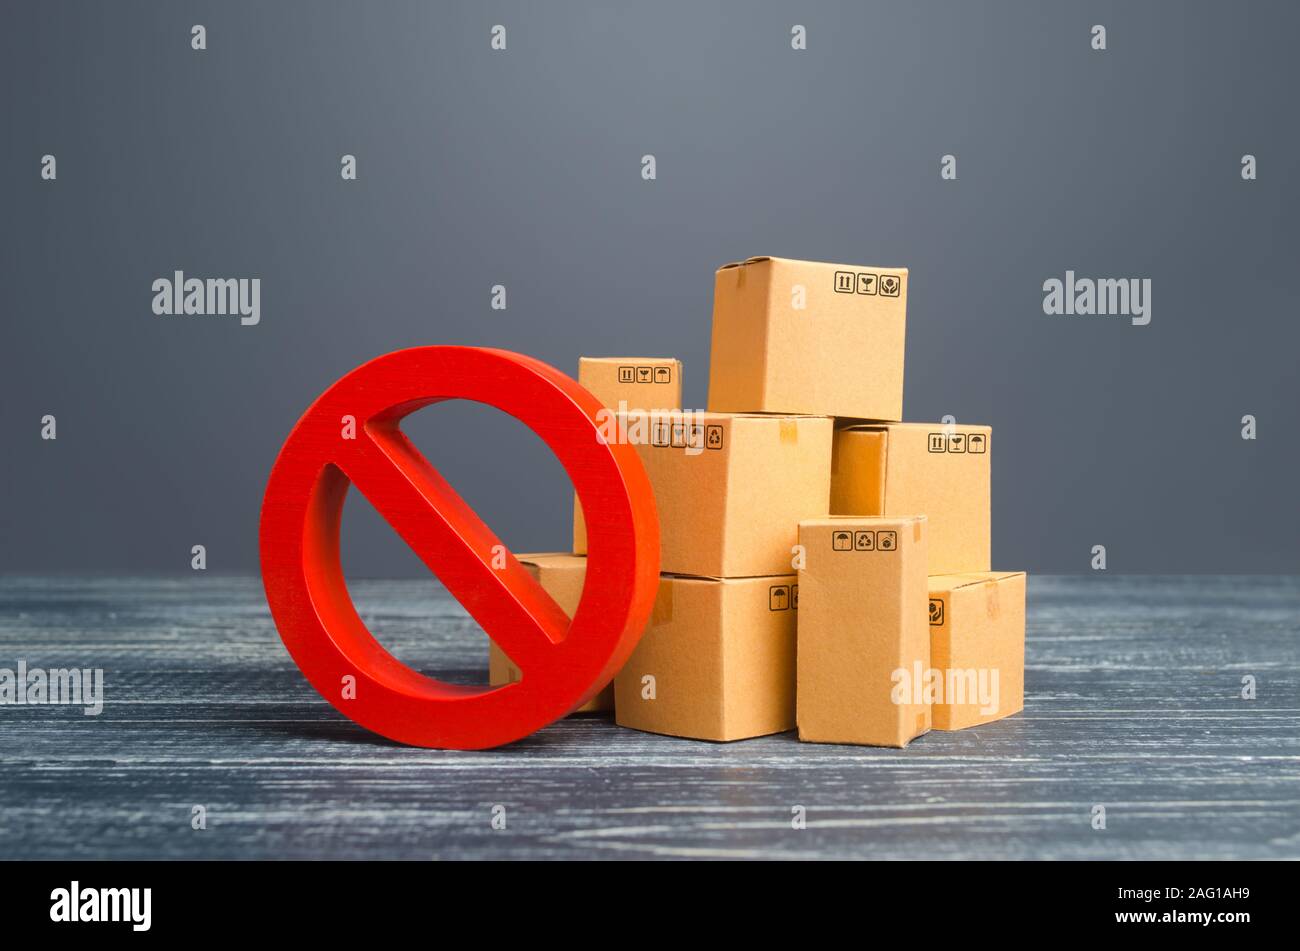 Kartons und rotes Verbotssymbol Nr. Beschränkung der Einfuhr, Verbot für den Export von Dual-use-Gütern in Länder, die unter Sanktionen. Nicht auf Lager. Emba Stockfoto